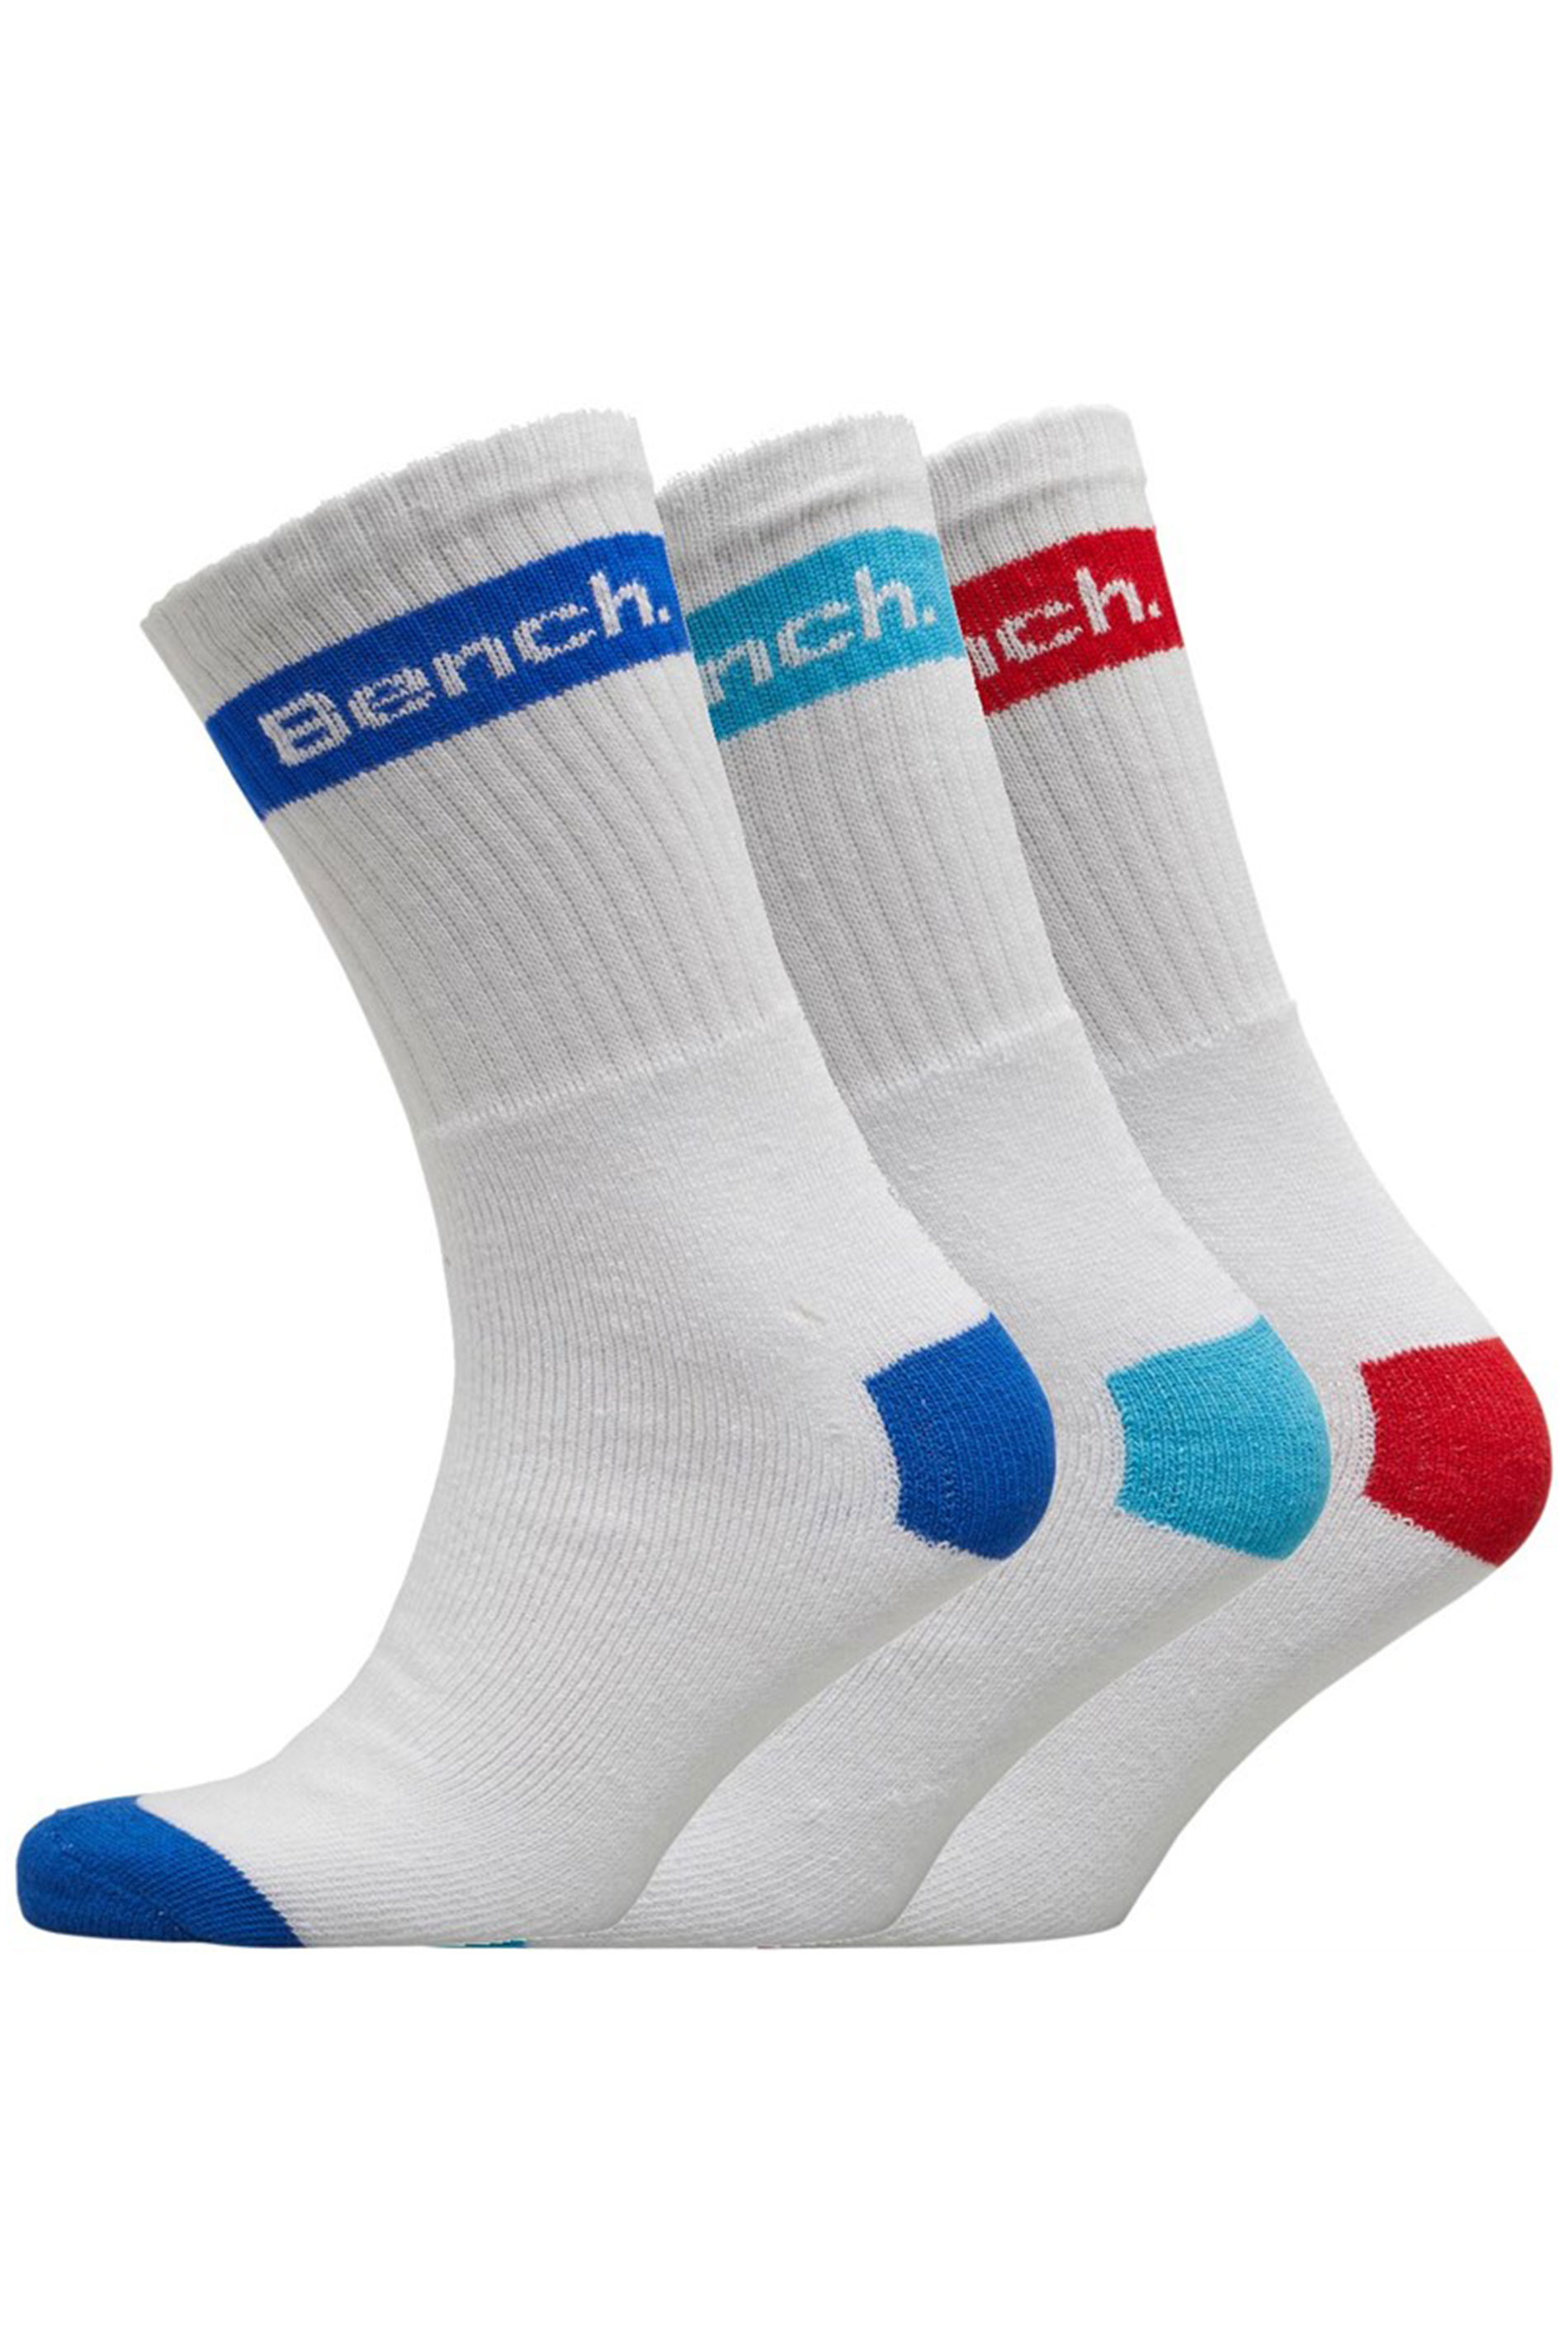 BENCH 3 PACK White Sport Crew Socks | BadRhino